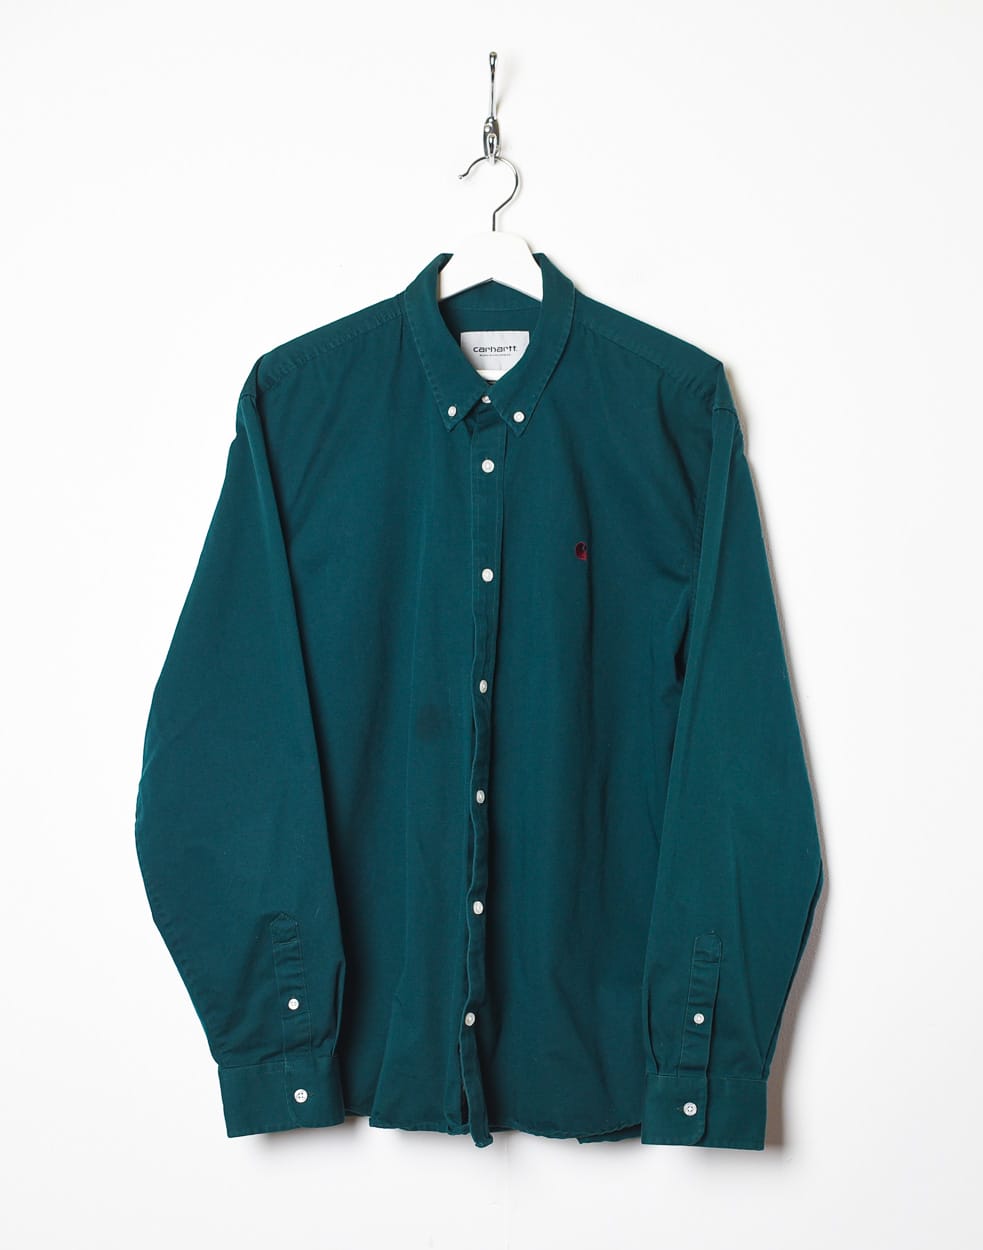 Green Carhartt Shirt - X-Large